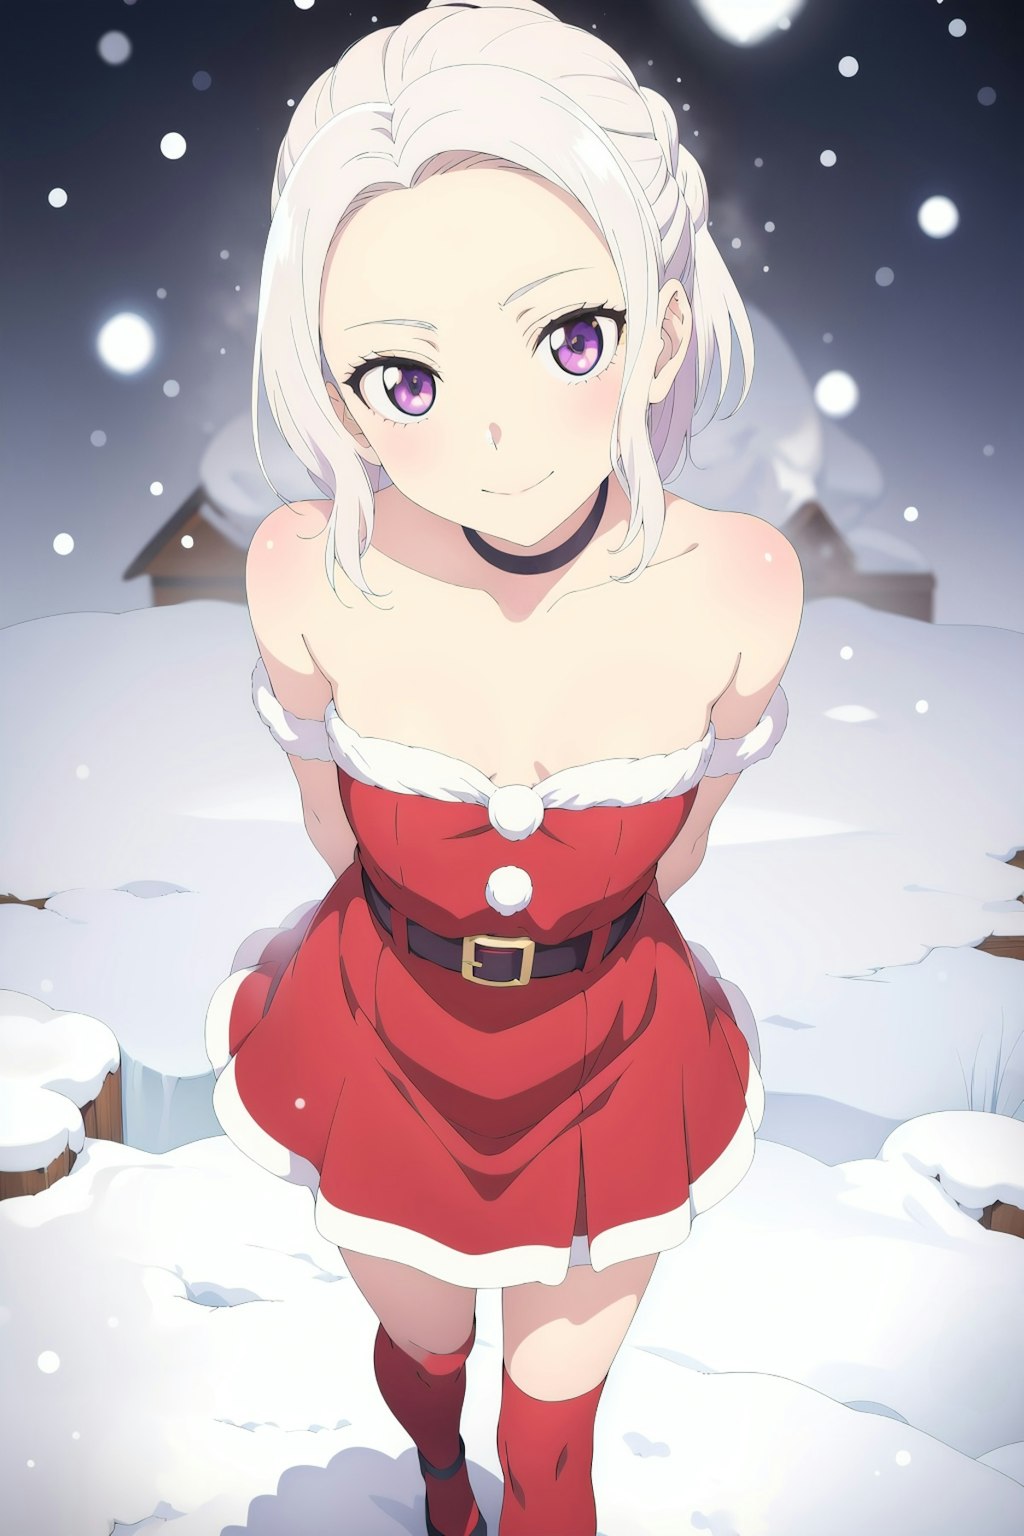 Christmas